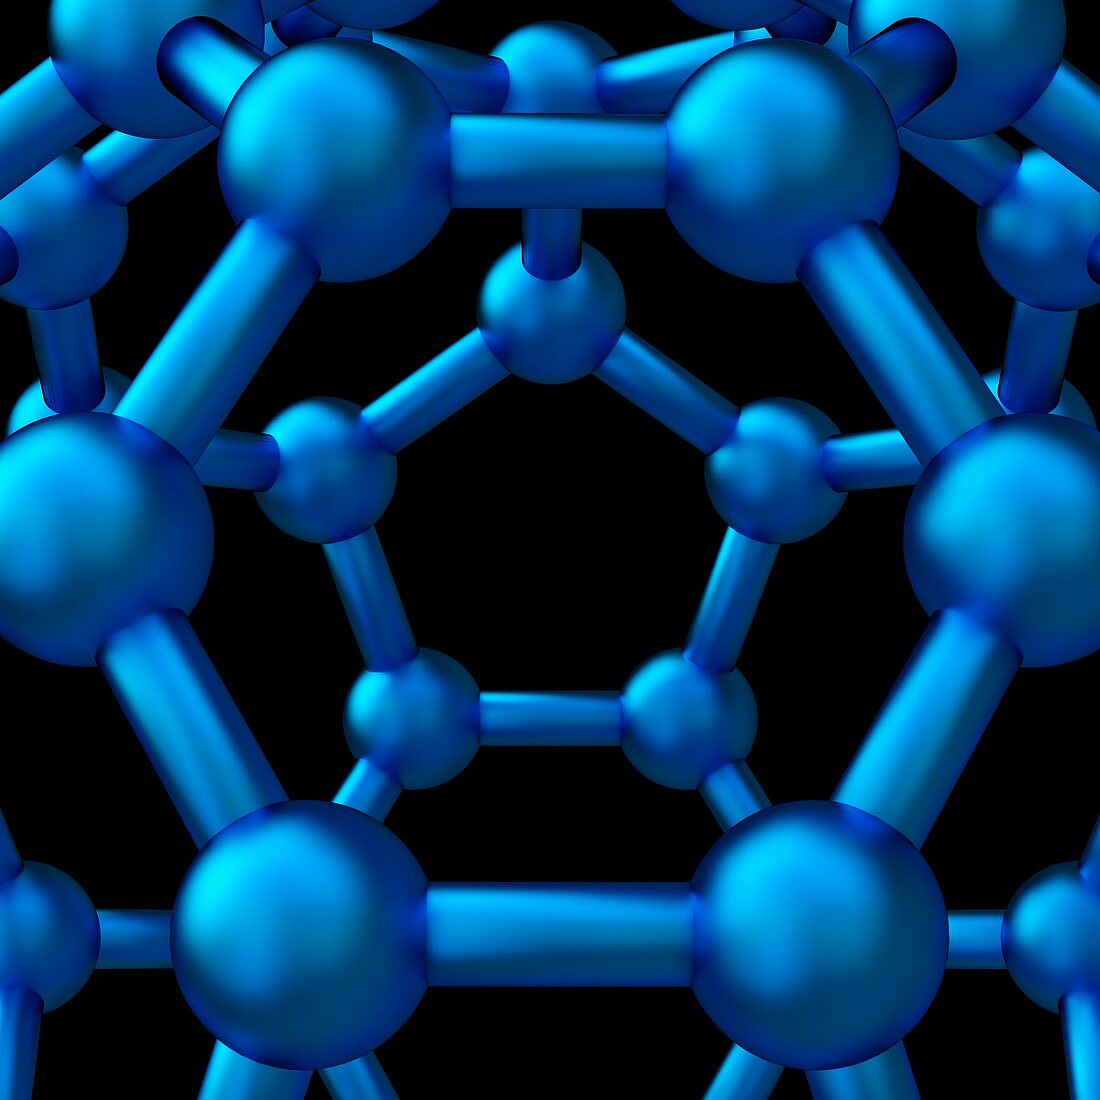 Buckyball molecule C60 detail, illustration